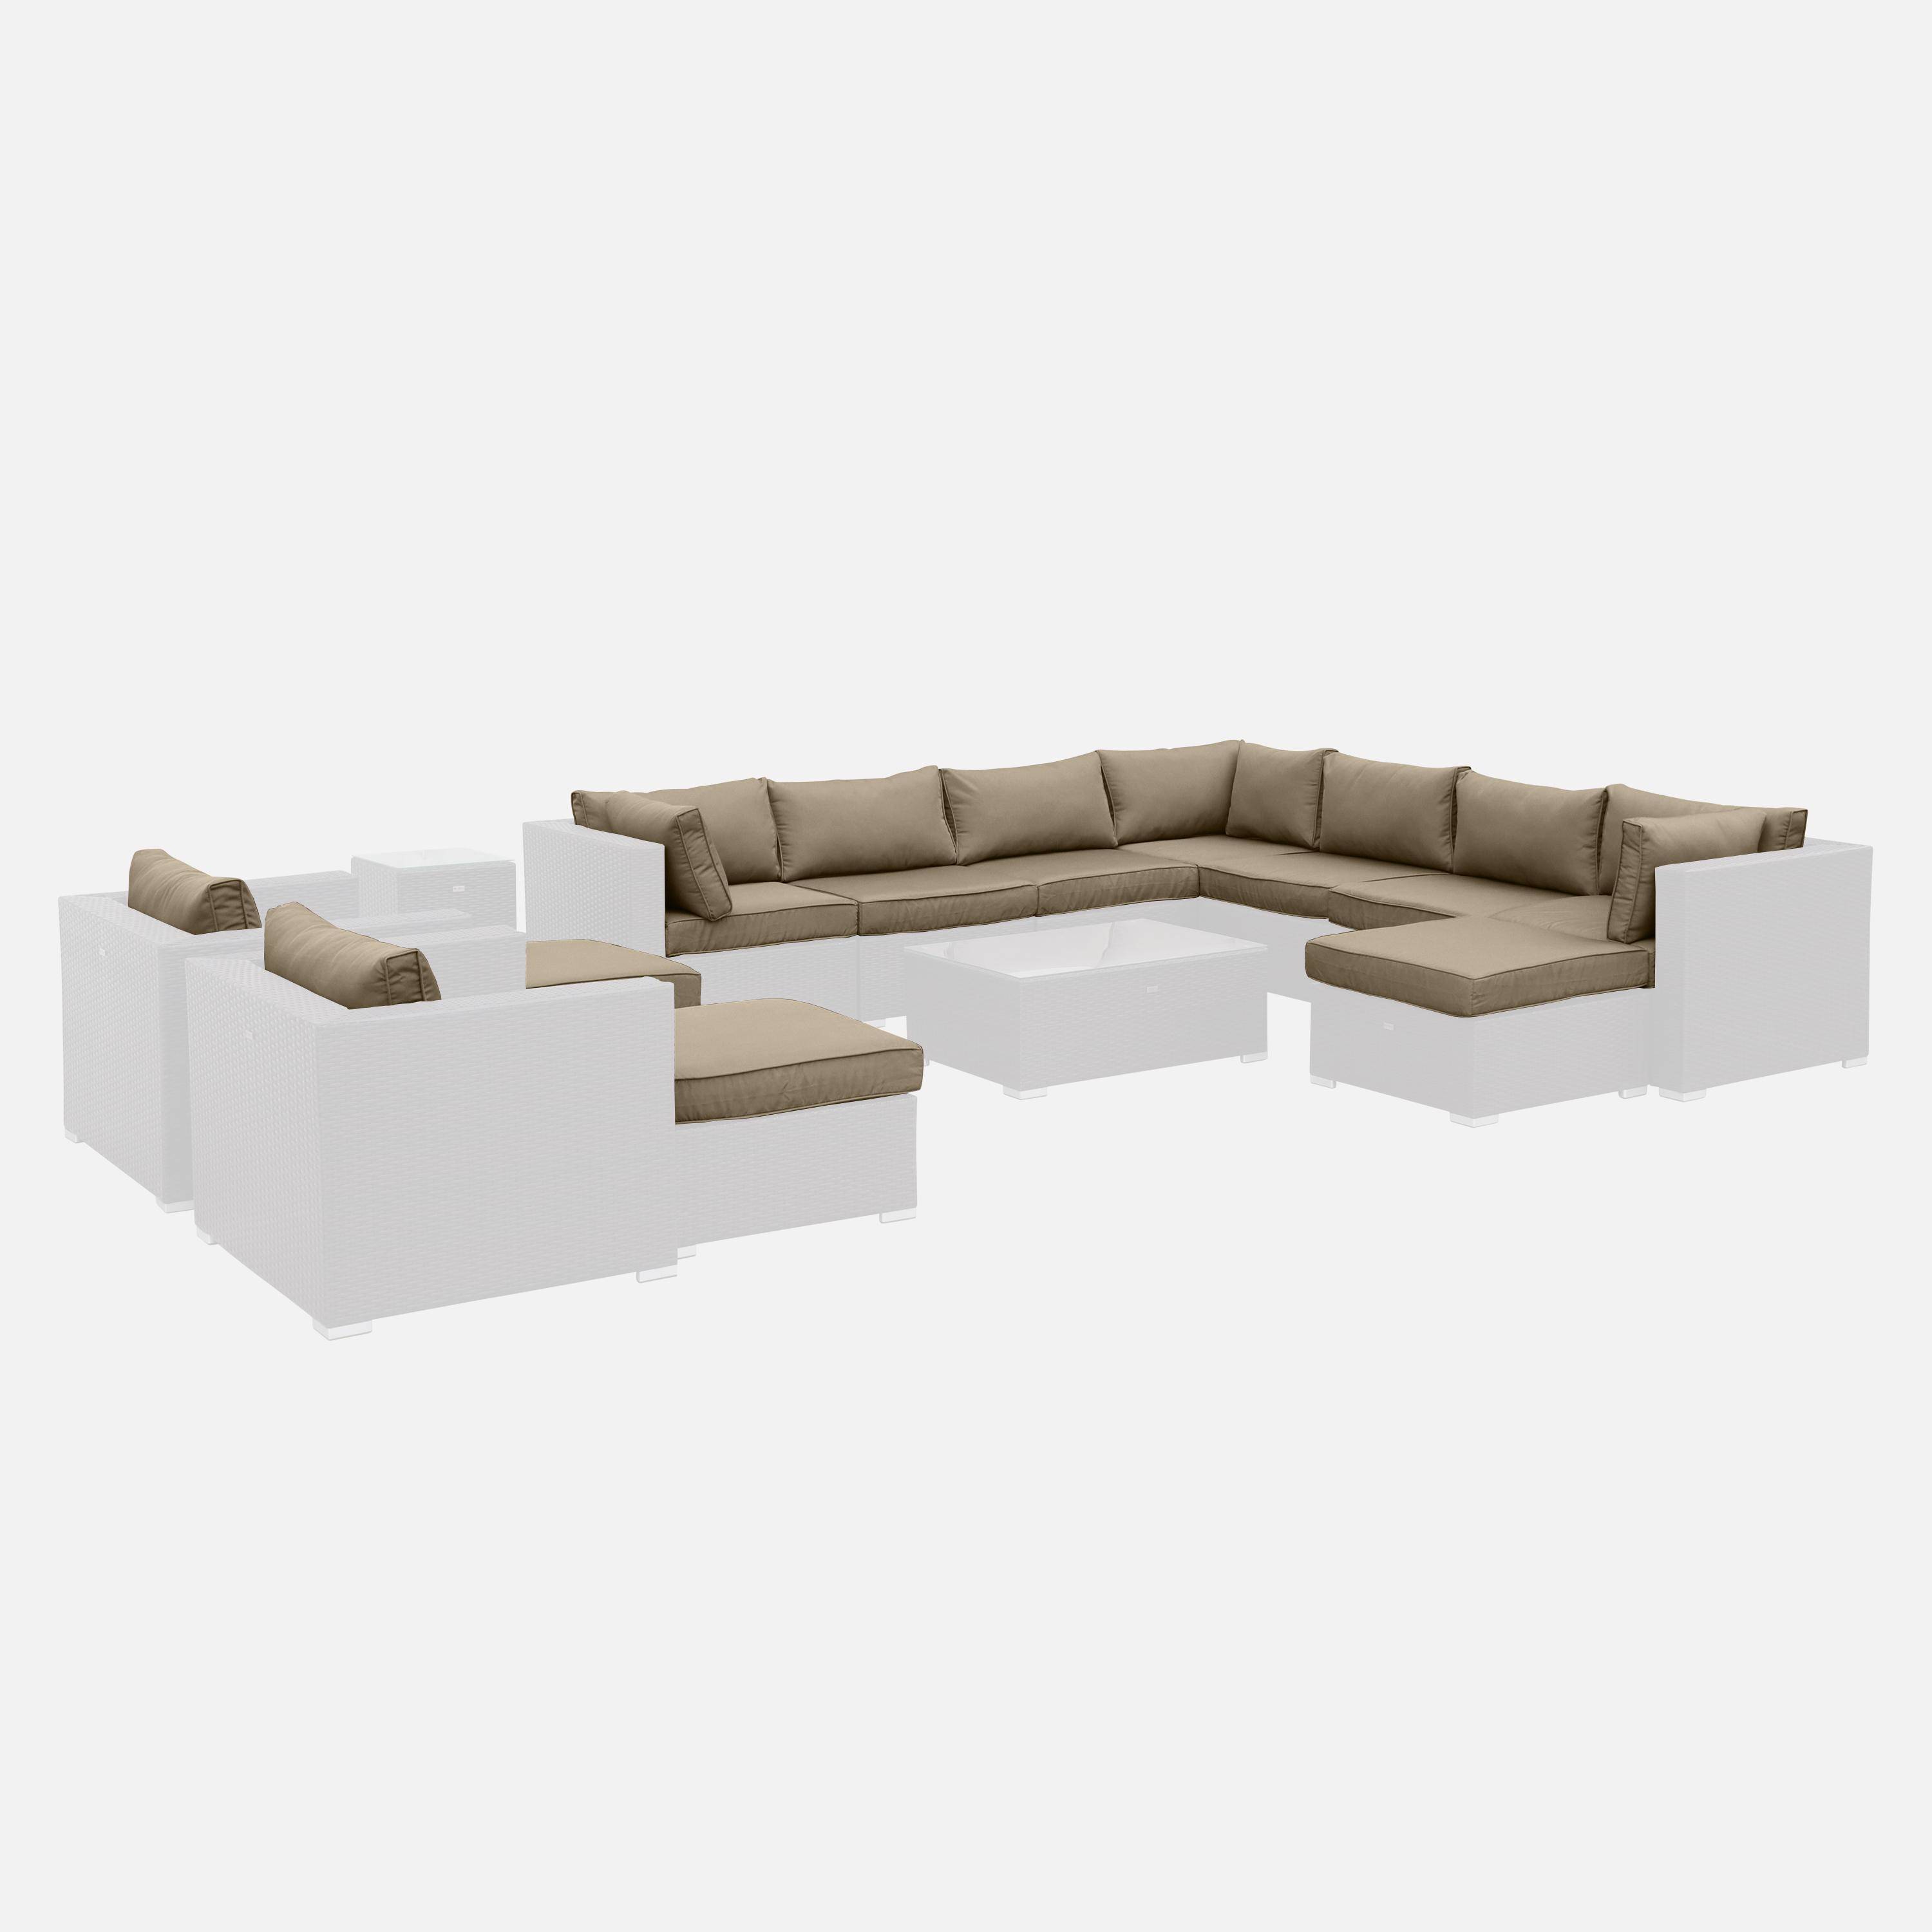 Set di fodere per cuscini, colore: Marrone, per salotto da giardino, modello: Tripoli - set completo,sweeek,Photo1